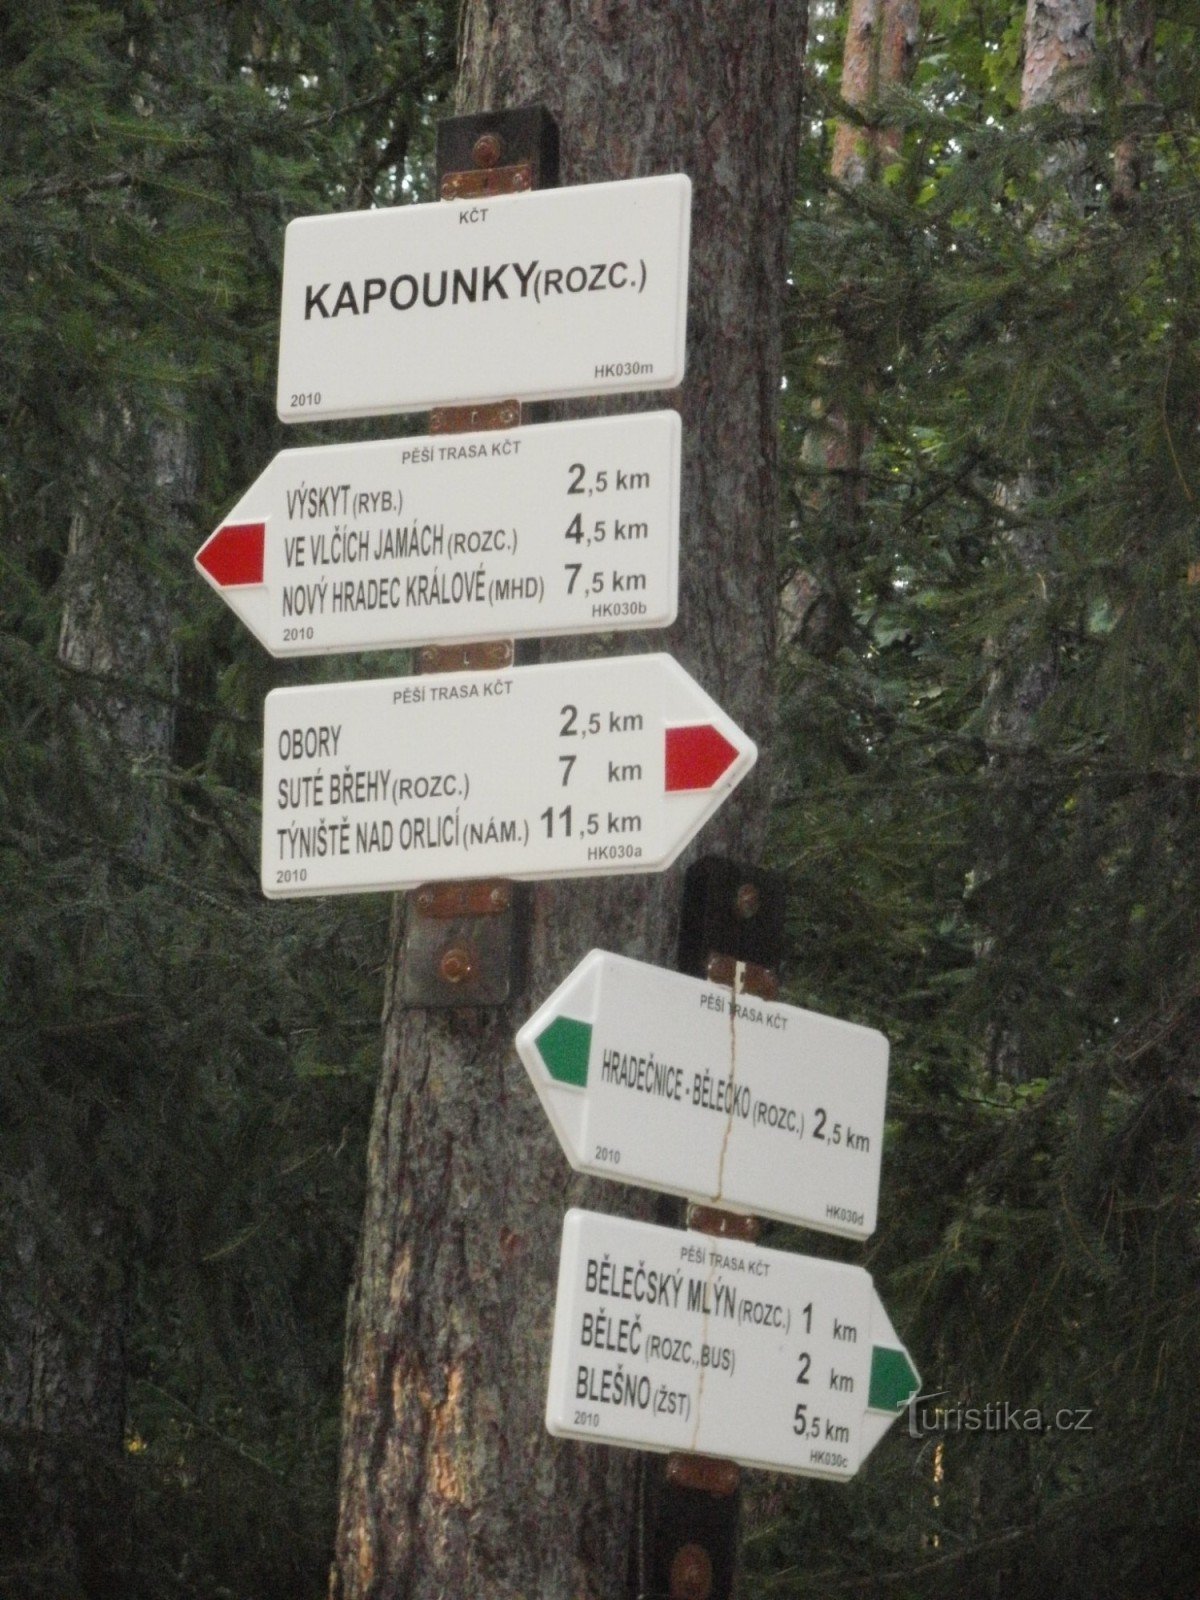 Kreuzung Kapounky - Hradecké lesy